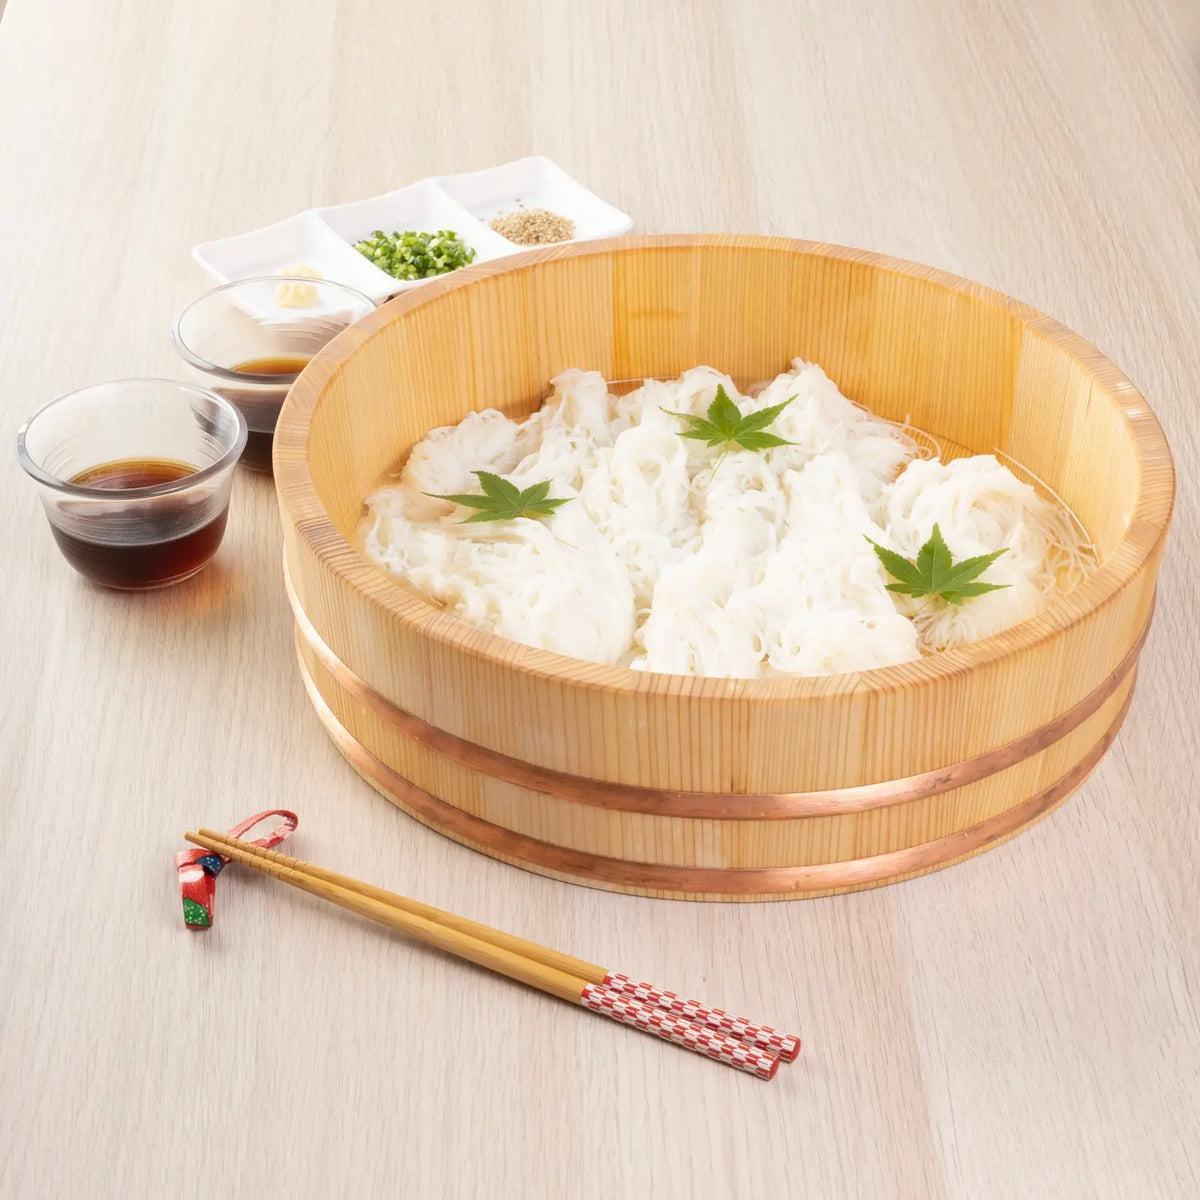 MIYABI URUSHI KOGEI Hangiri Sawara Wooden Rice Mixing Bowl with Lid